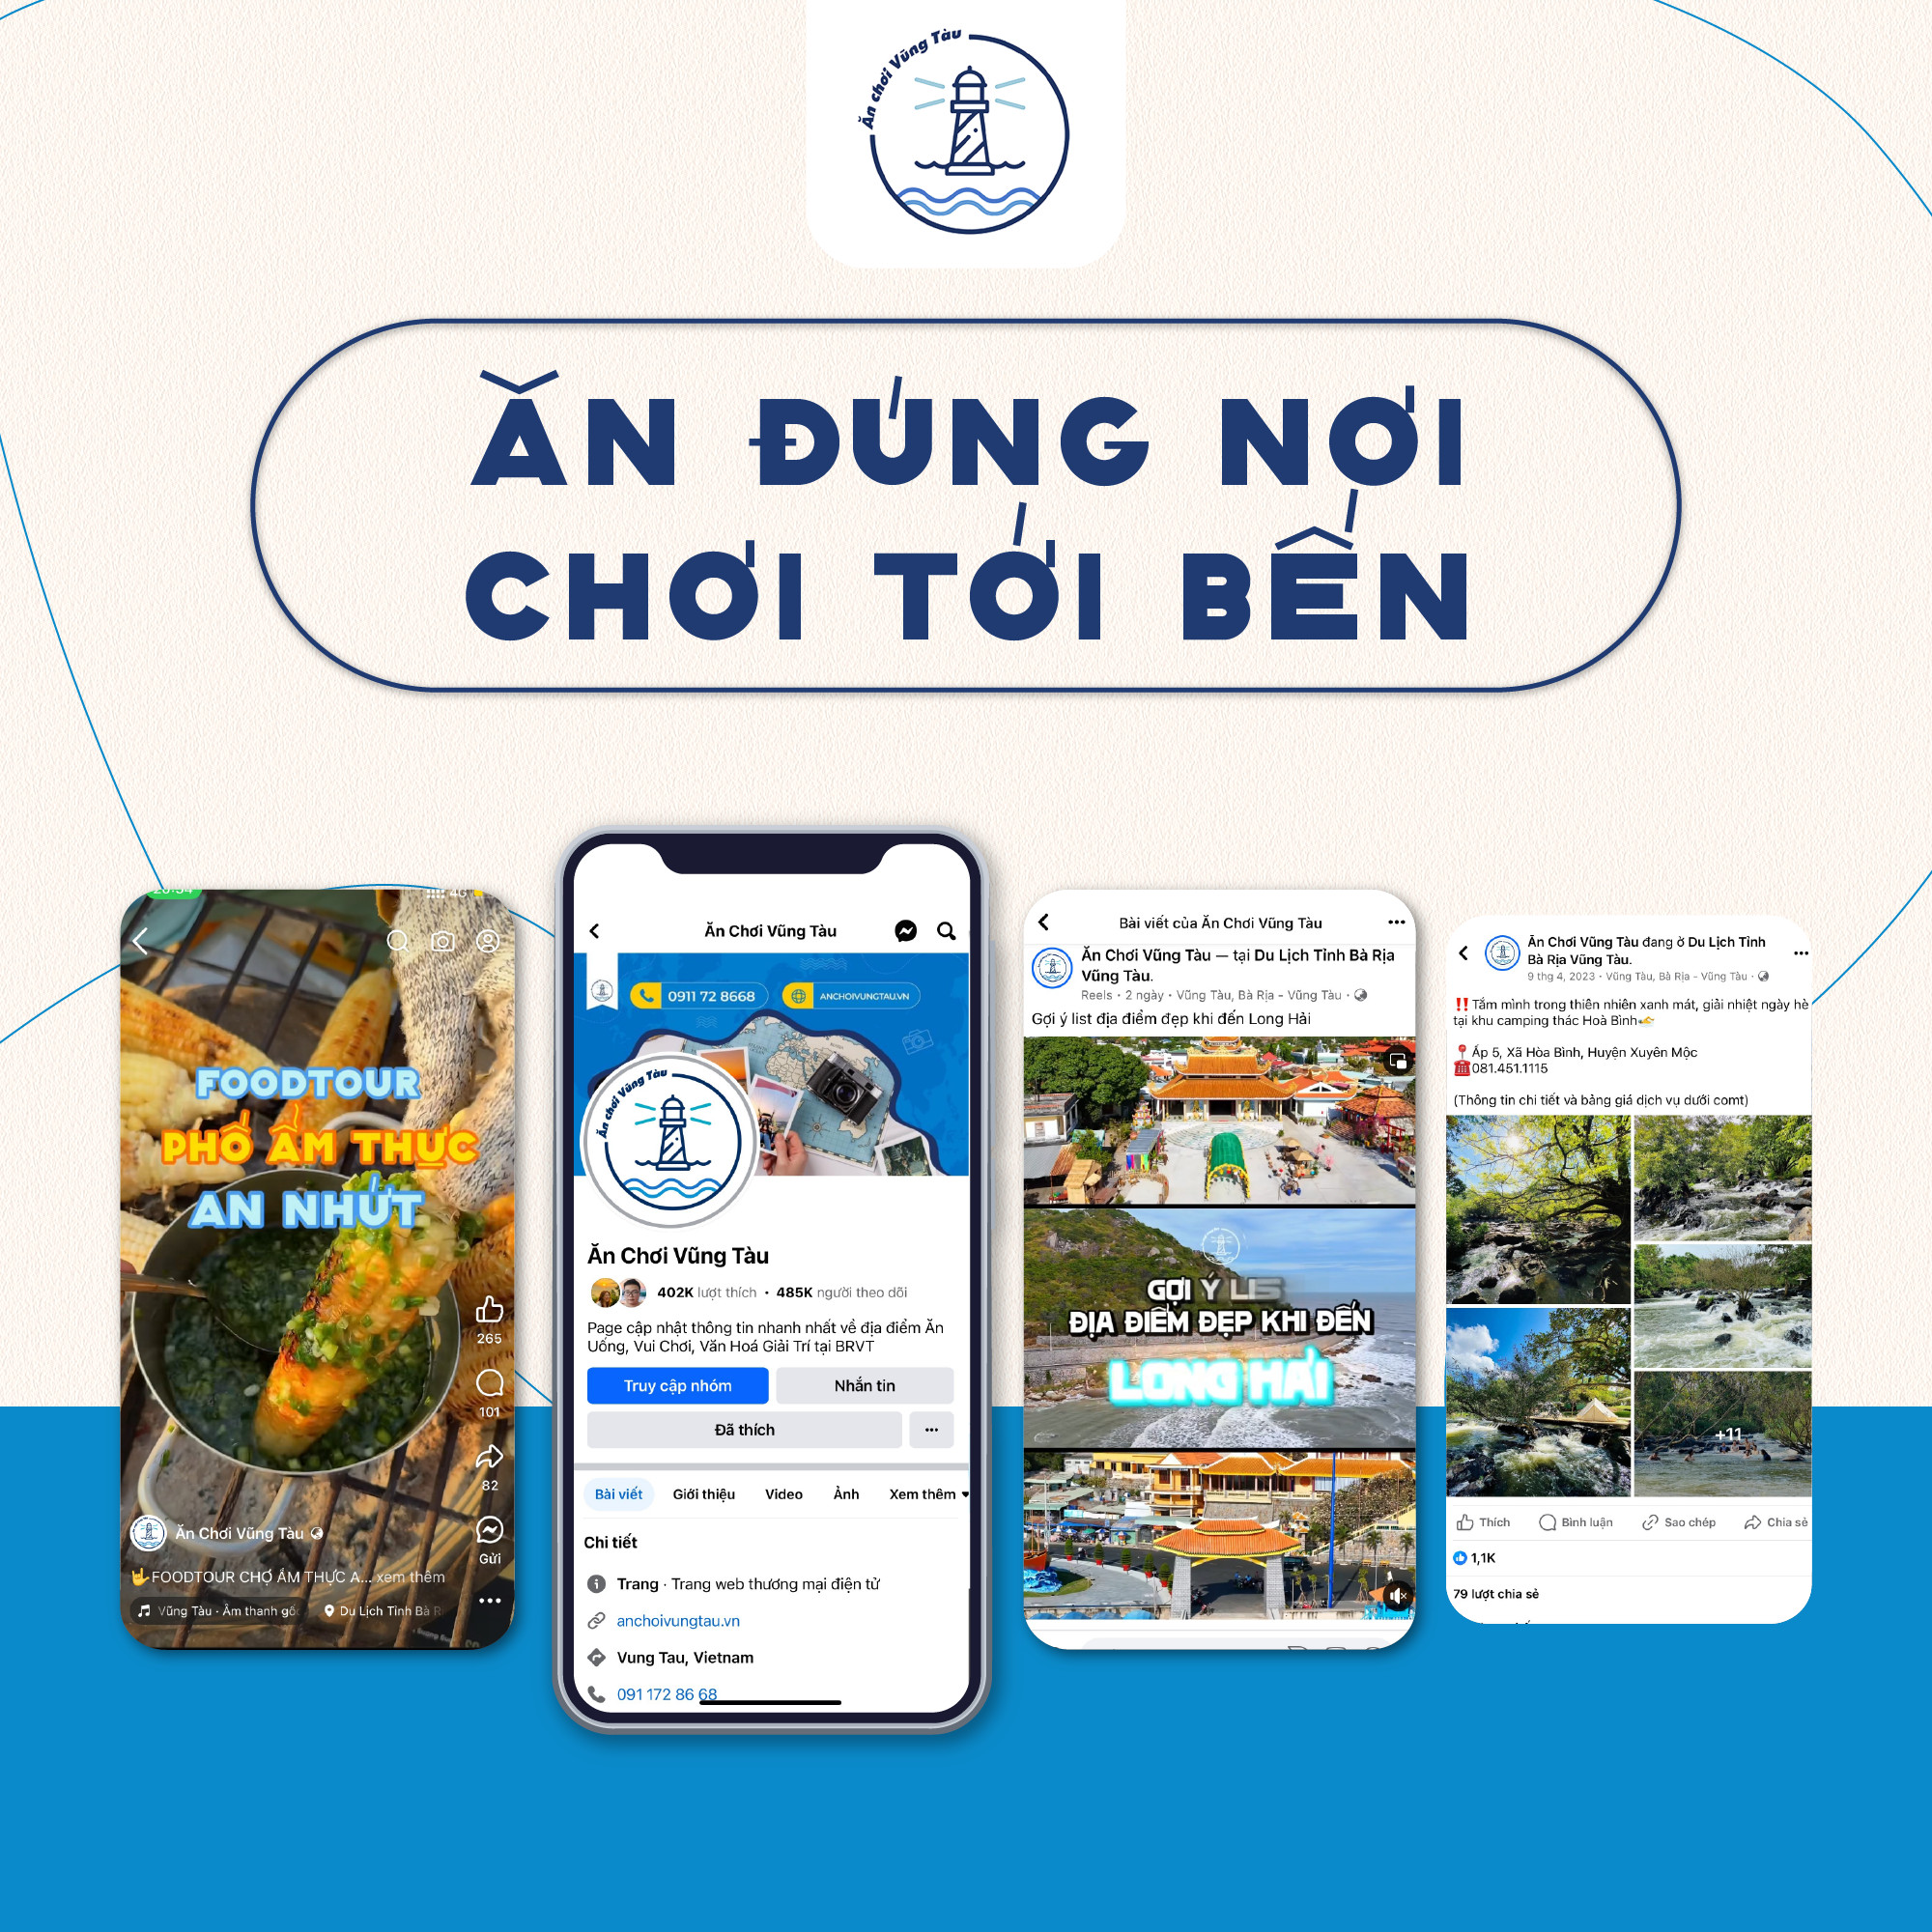 Fanpage "Ăn Chơi Vũng Tàu' - Cộng đồng chia sẻ câu chuyện văn hóa và ẩm thực địa phương Bà Rịa Vũng Tàu